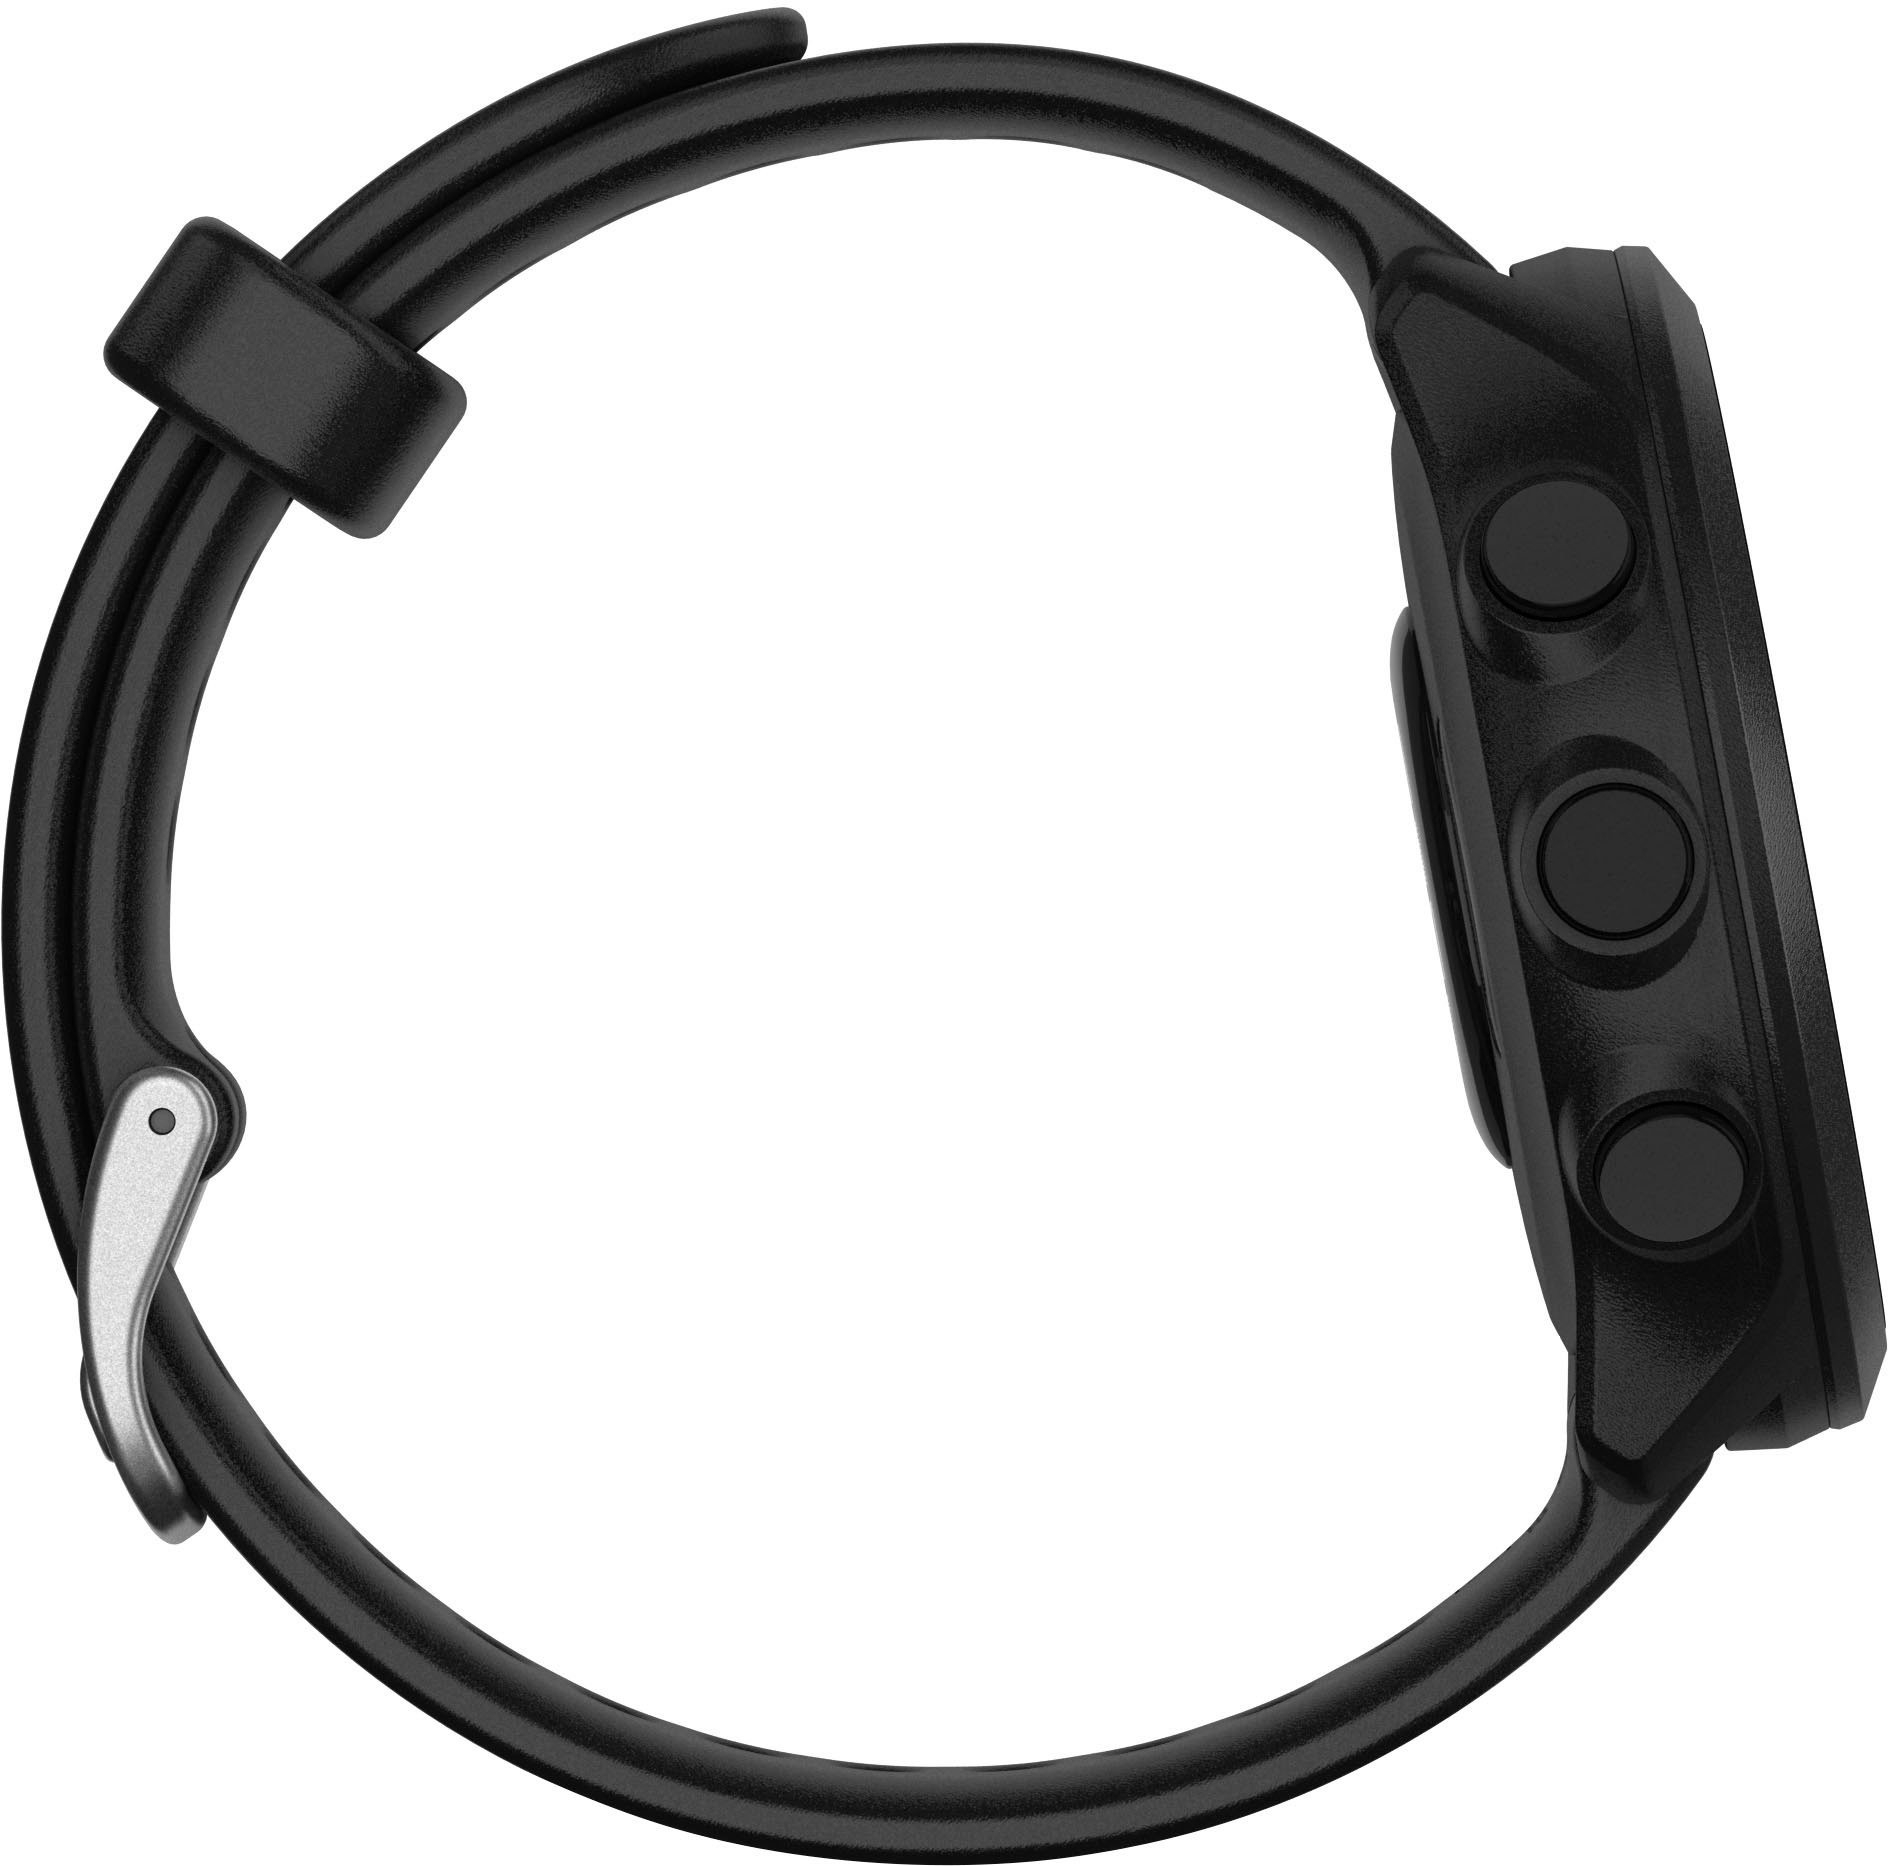 Garmin Forerunner 265 GPS Smartwatch 46 mm Fiber-reinforced polymer  Black/Aqua 010-02810-02 - Best Buy